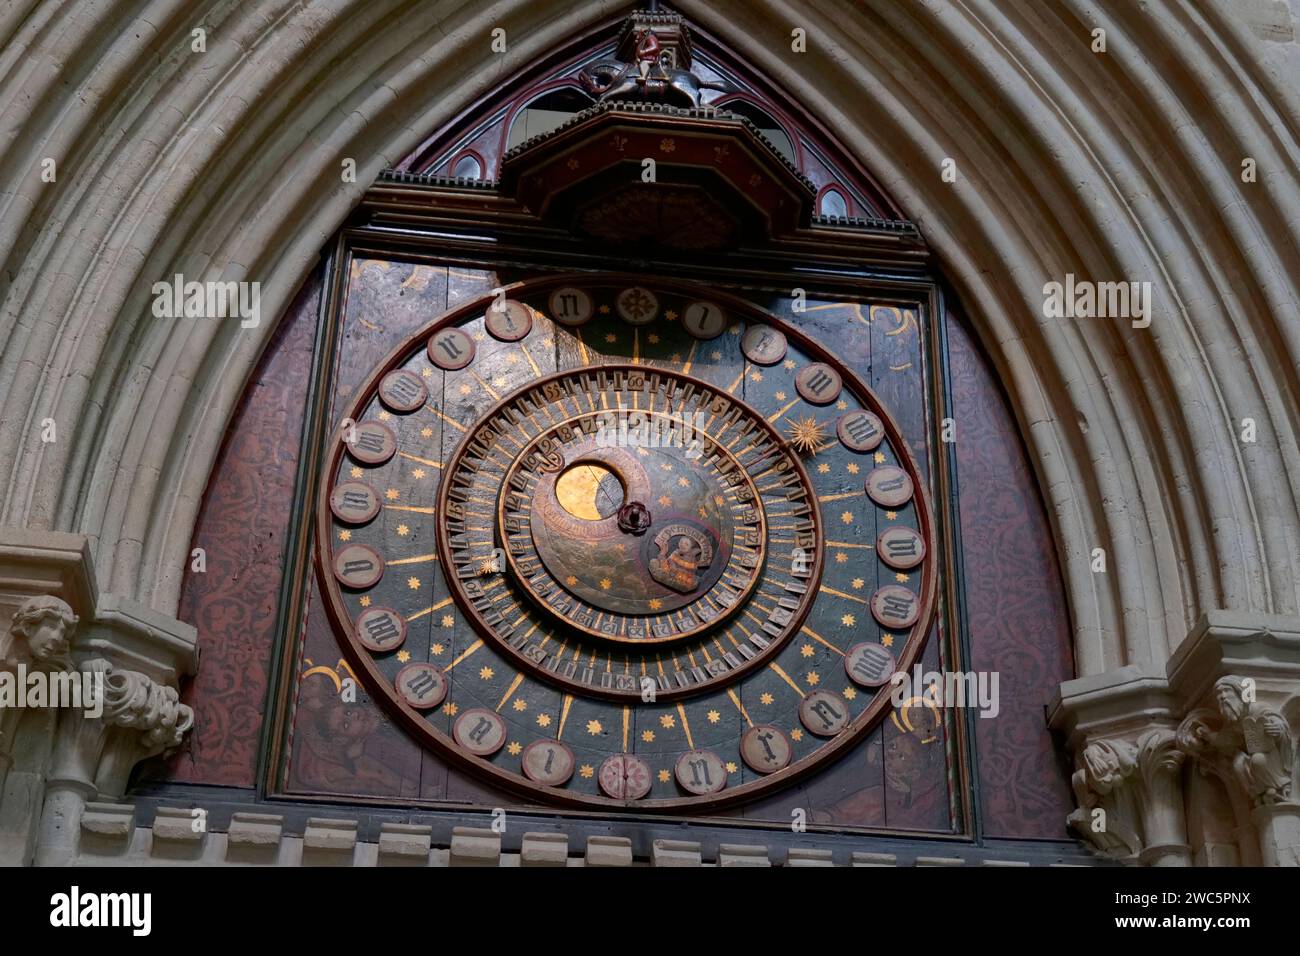 Das innere Zifferblatt der astronomischen Uhr, das bis 1325 datiert ist, stammt vermutlich von Peter Lightfoot, Wells Cathedral, Somerset, England, Großbritannien Stockfoto